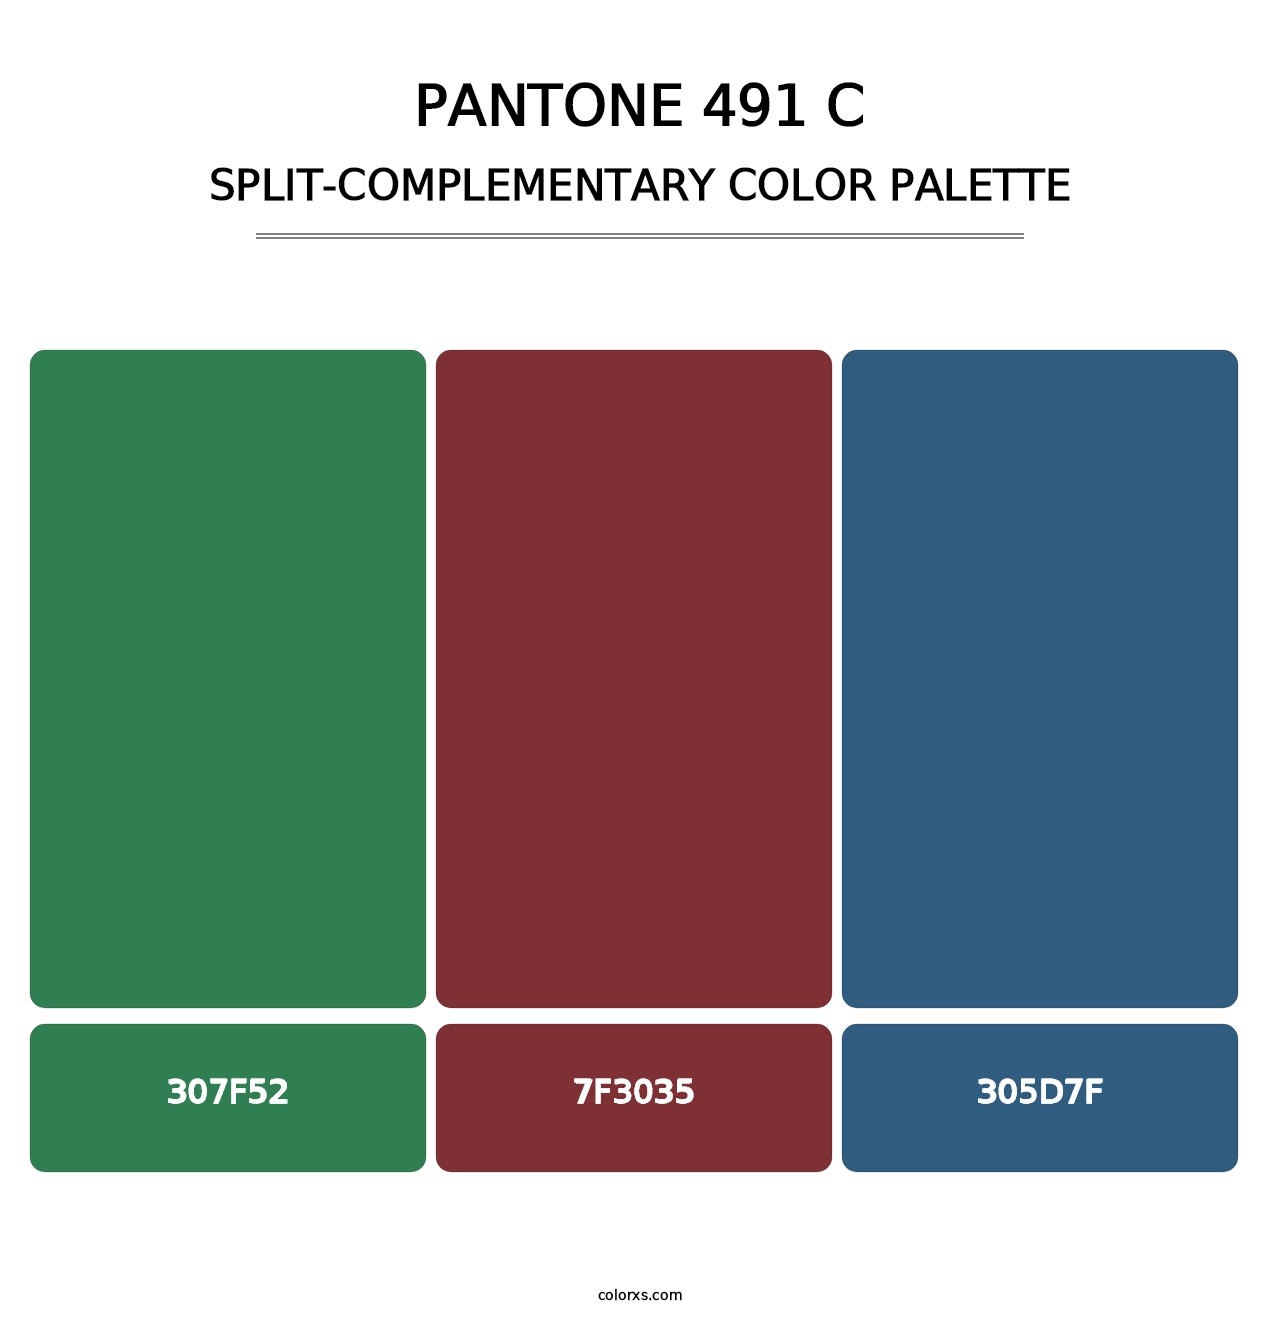 PANTONE 491 C - Split-Complementary Color Palette